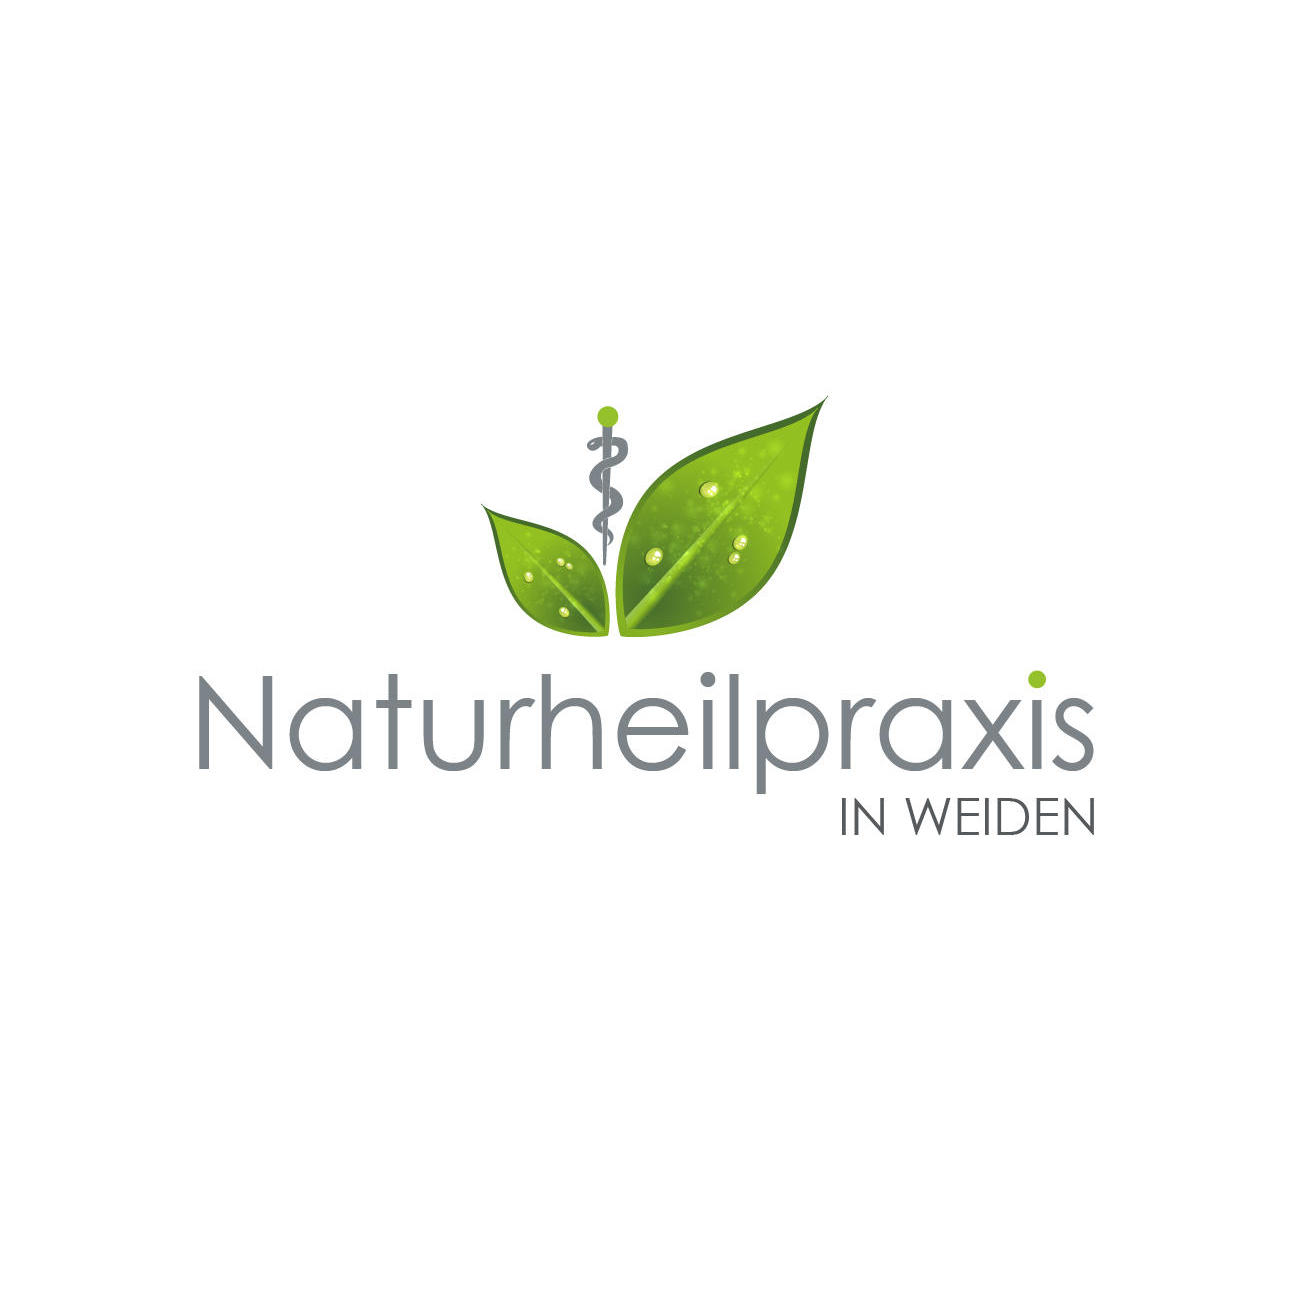 Naturheilpraxis in Weiden in Weiden in der Oberpfalz - Logo